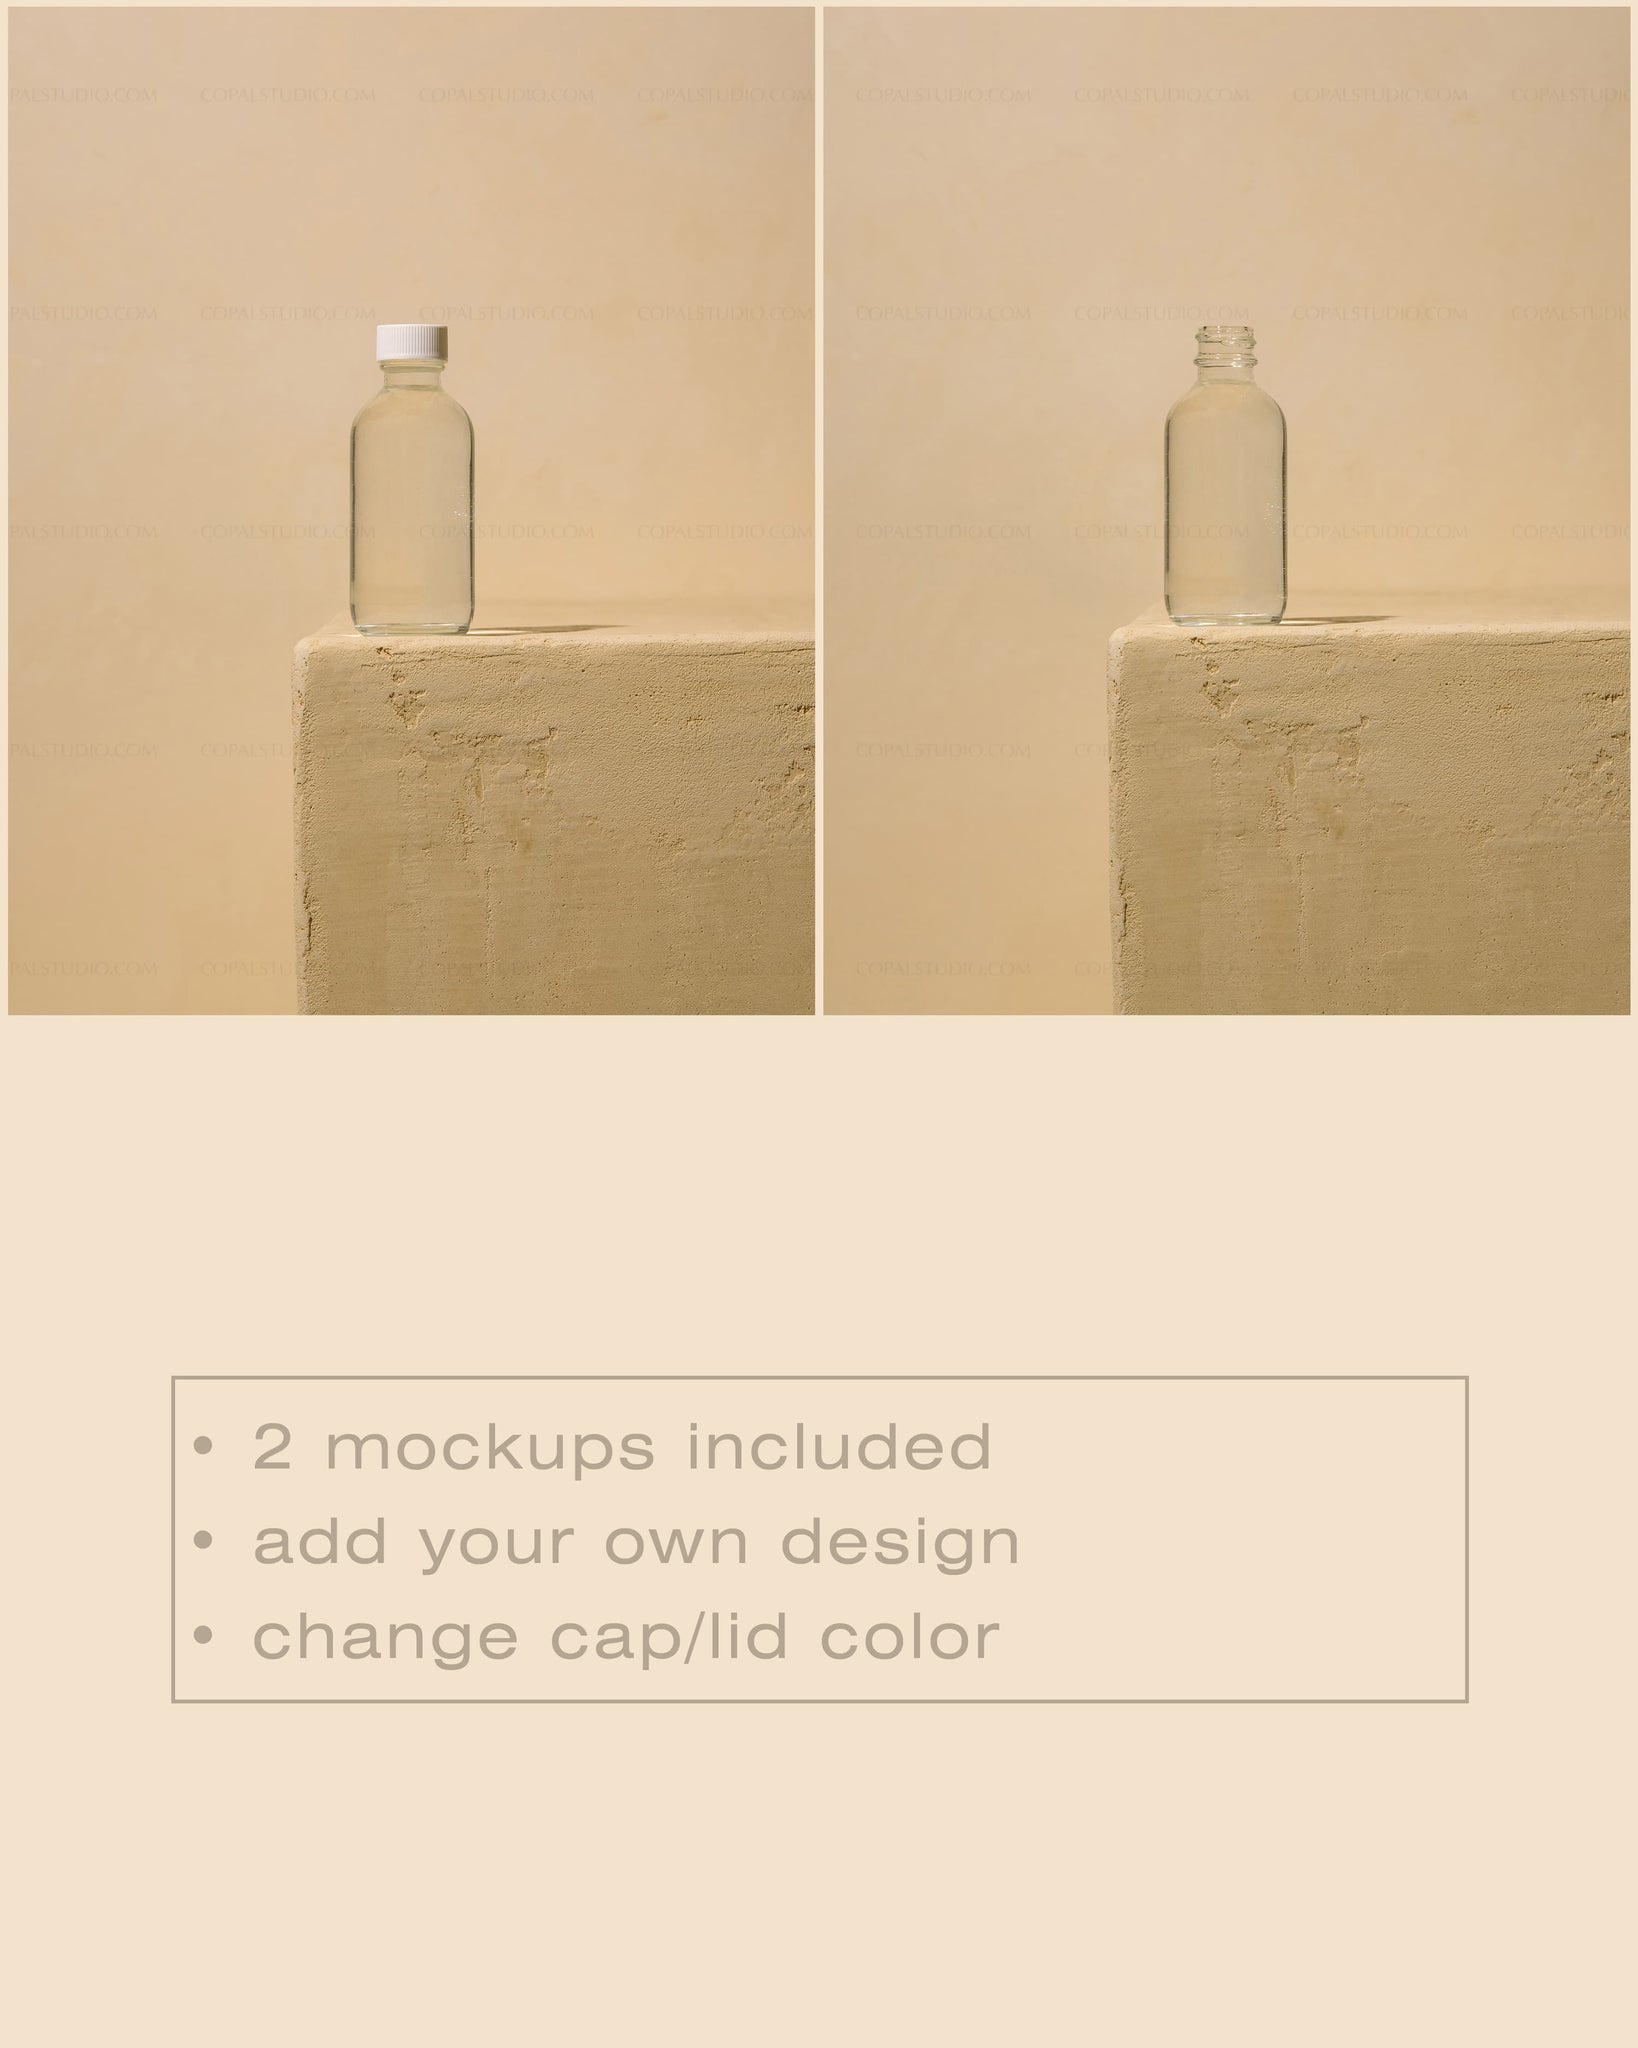 Round Glass Bottle Mockup No. 7 - Copal Studio Packaging Mockups For Designers